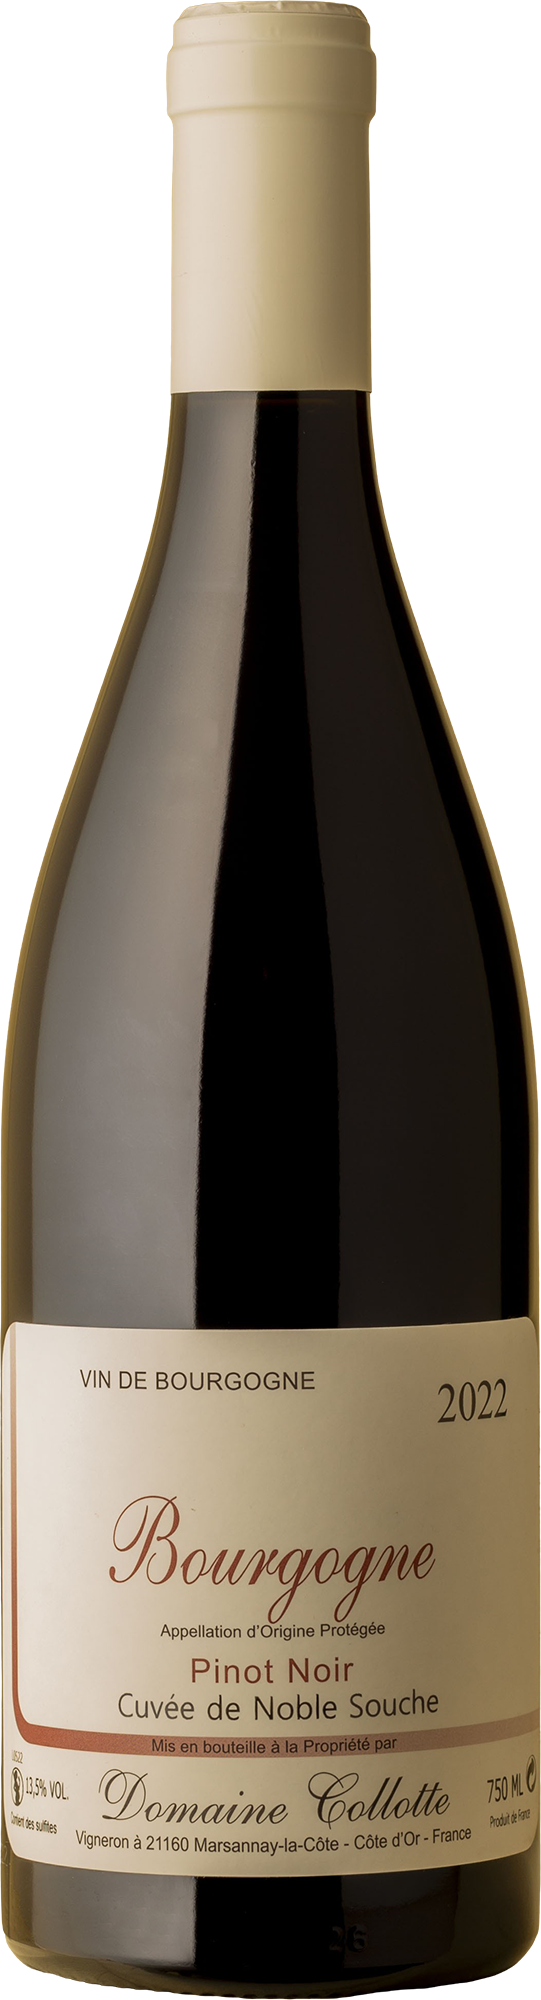 Domaine Collotte - Bourgogne Cuvee de Noble Souche Pinot Noir 2022